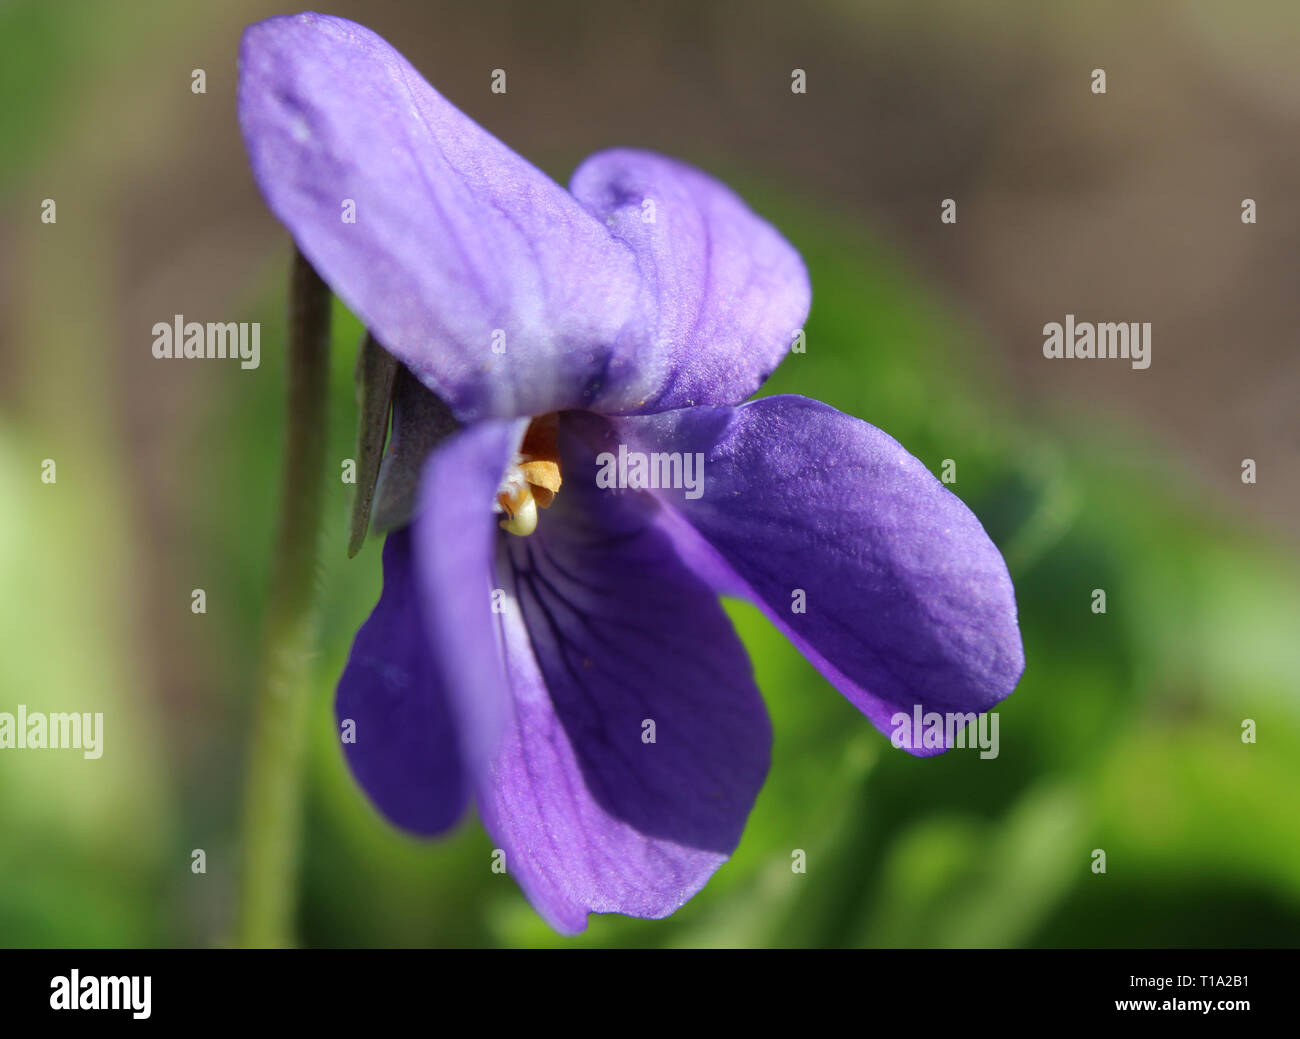 Extrelme Nahaufnahme Bild der kleinen Blume von Viola sororia, auch als die gemeinsame Blau Violett, oder Holz violett bekannt ist, wächst in einer natürlichen Umgebung. Stockfoto